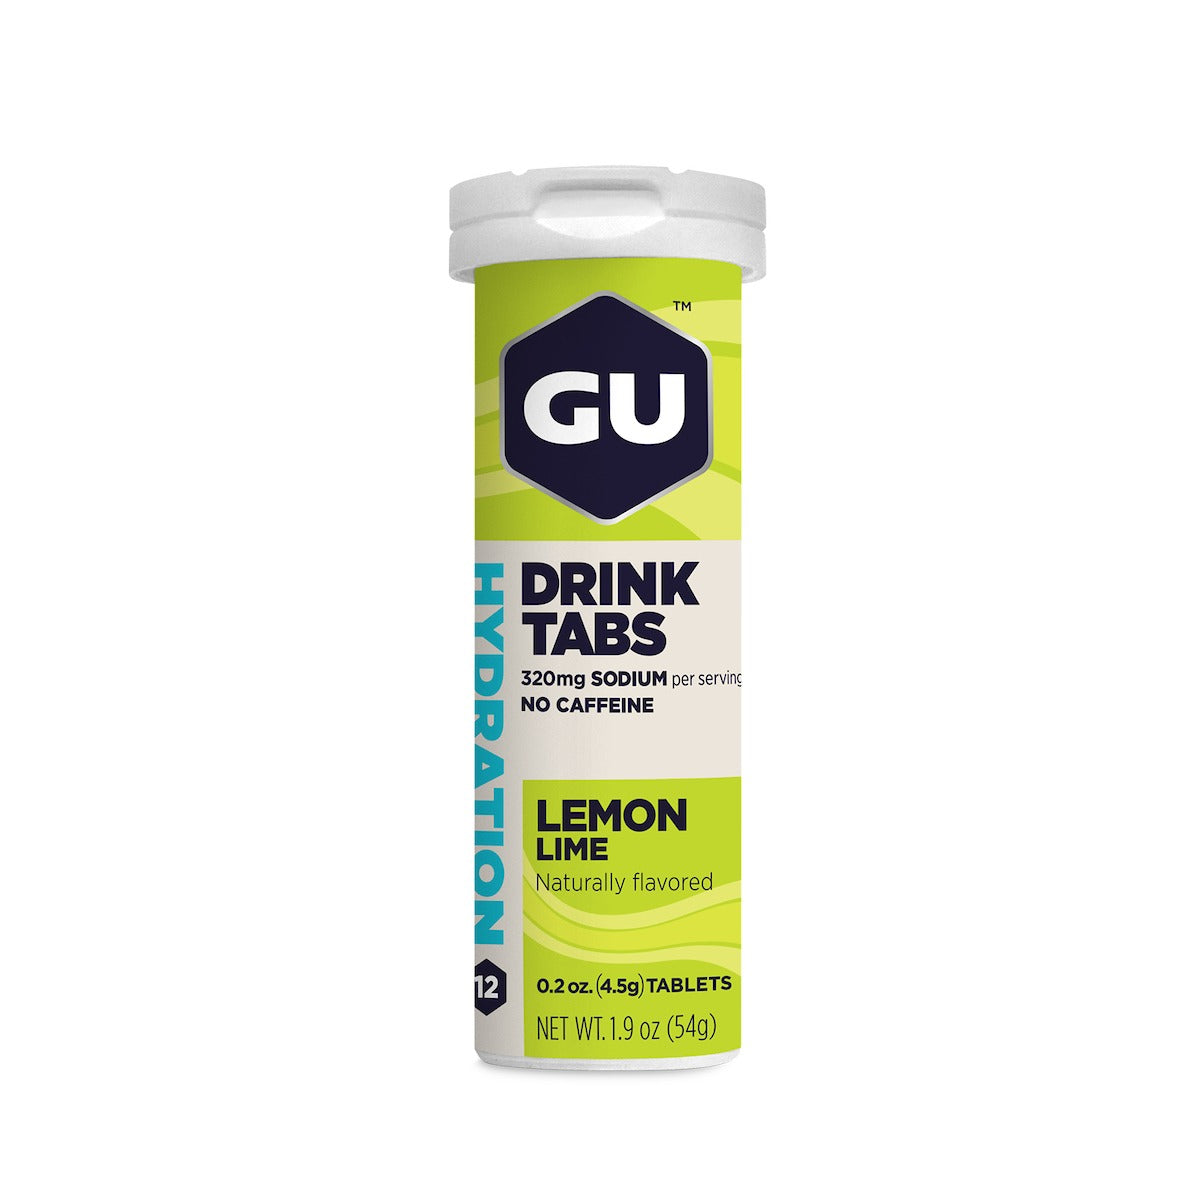 Hydration Drink Tabs Fra GU Energy med smag af lemon-lime